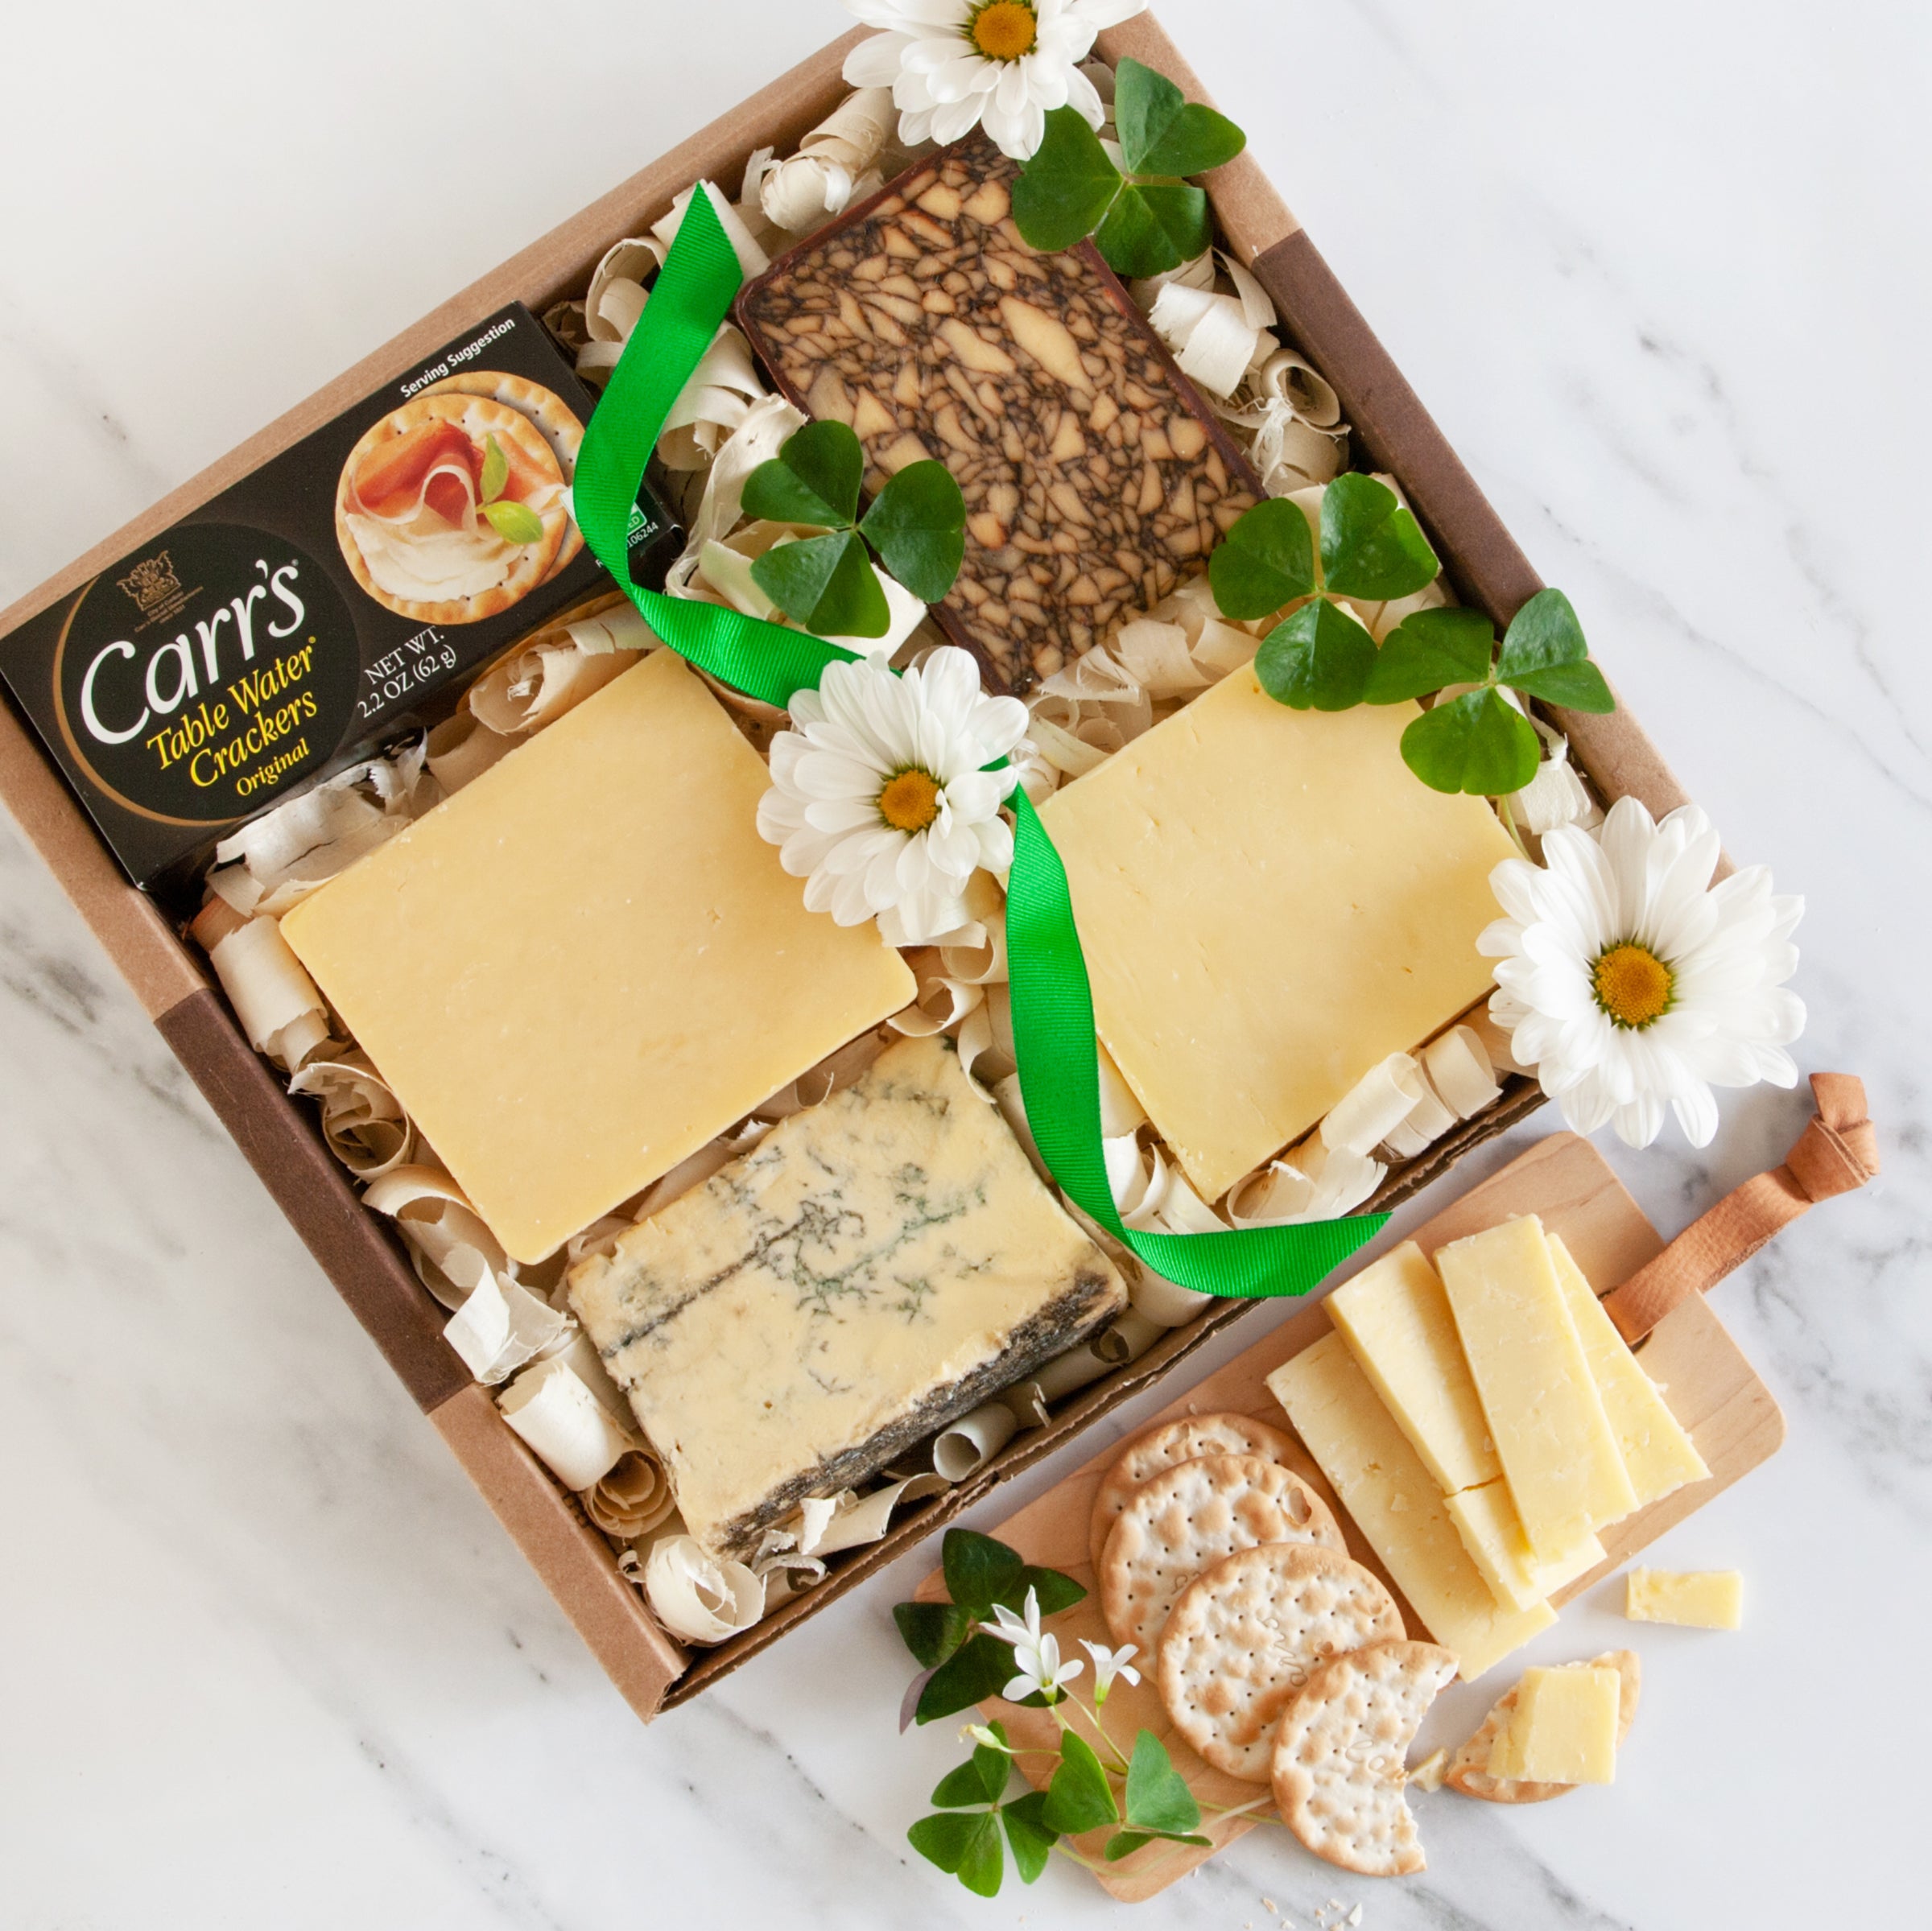 Irish Cheese Tasting Gift Box - igourmet